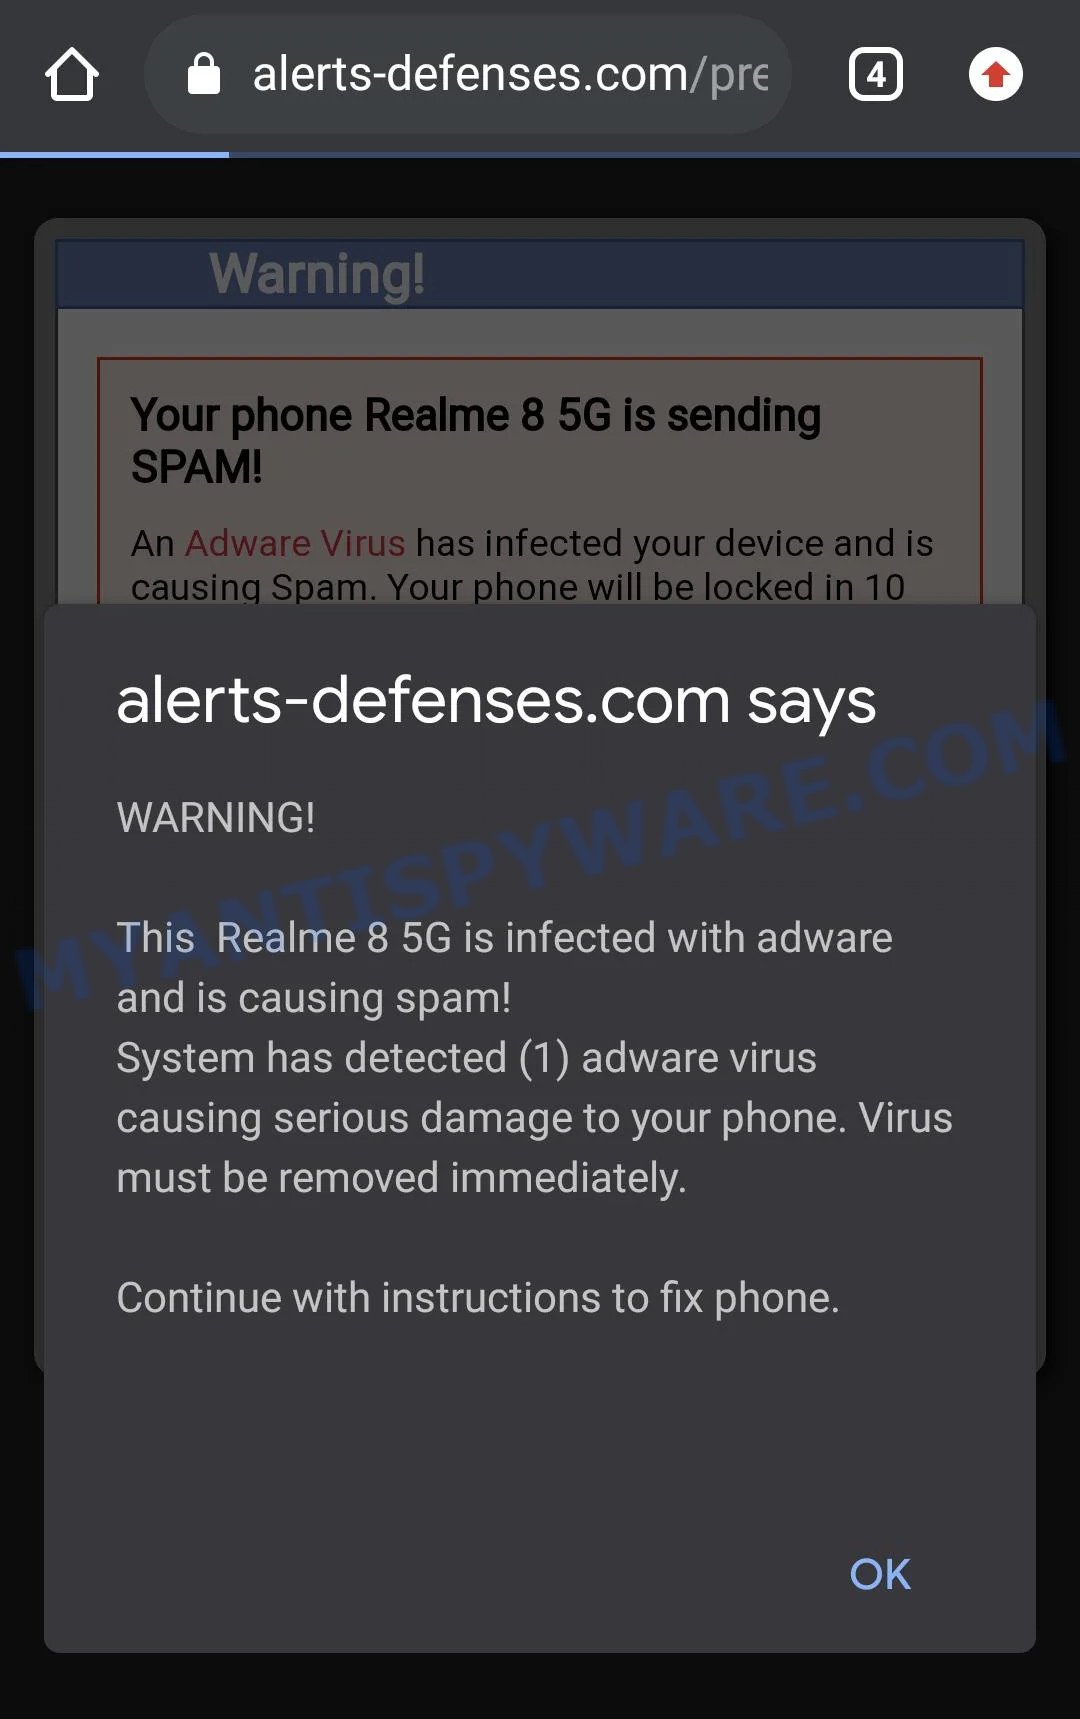 Alerts-defenses.com scam